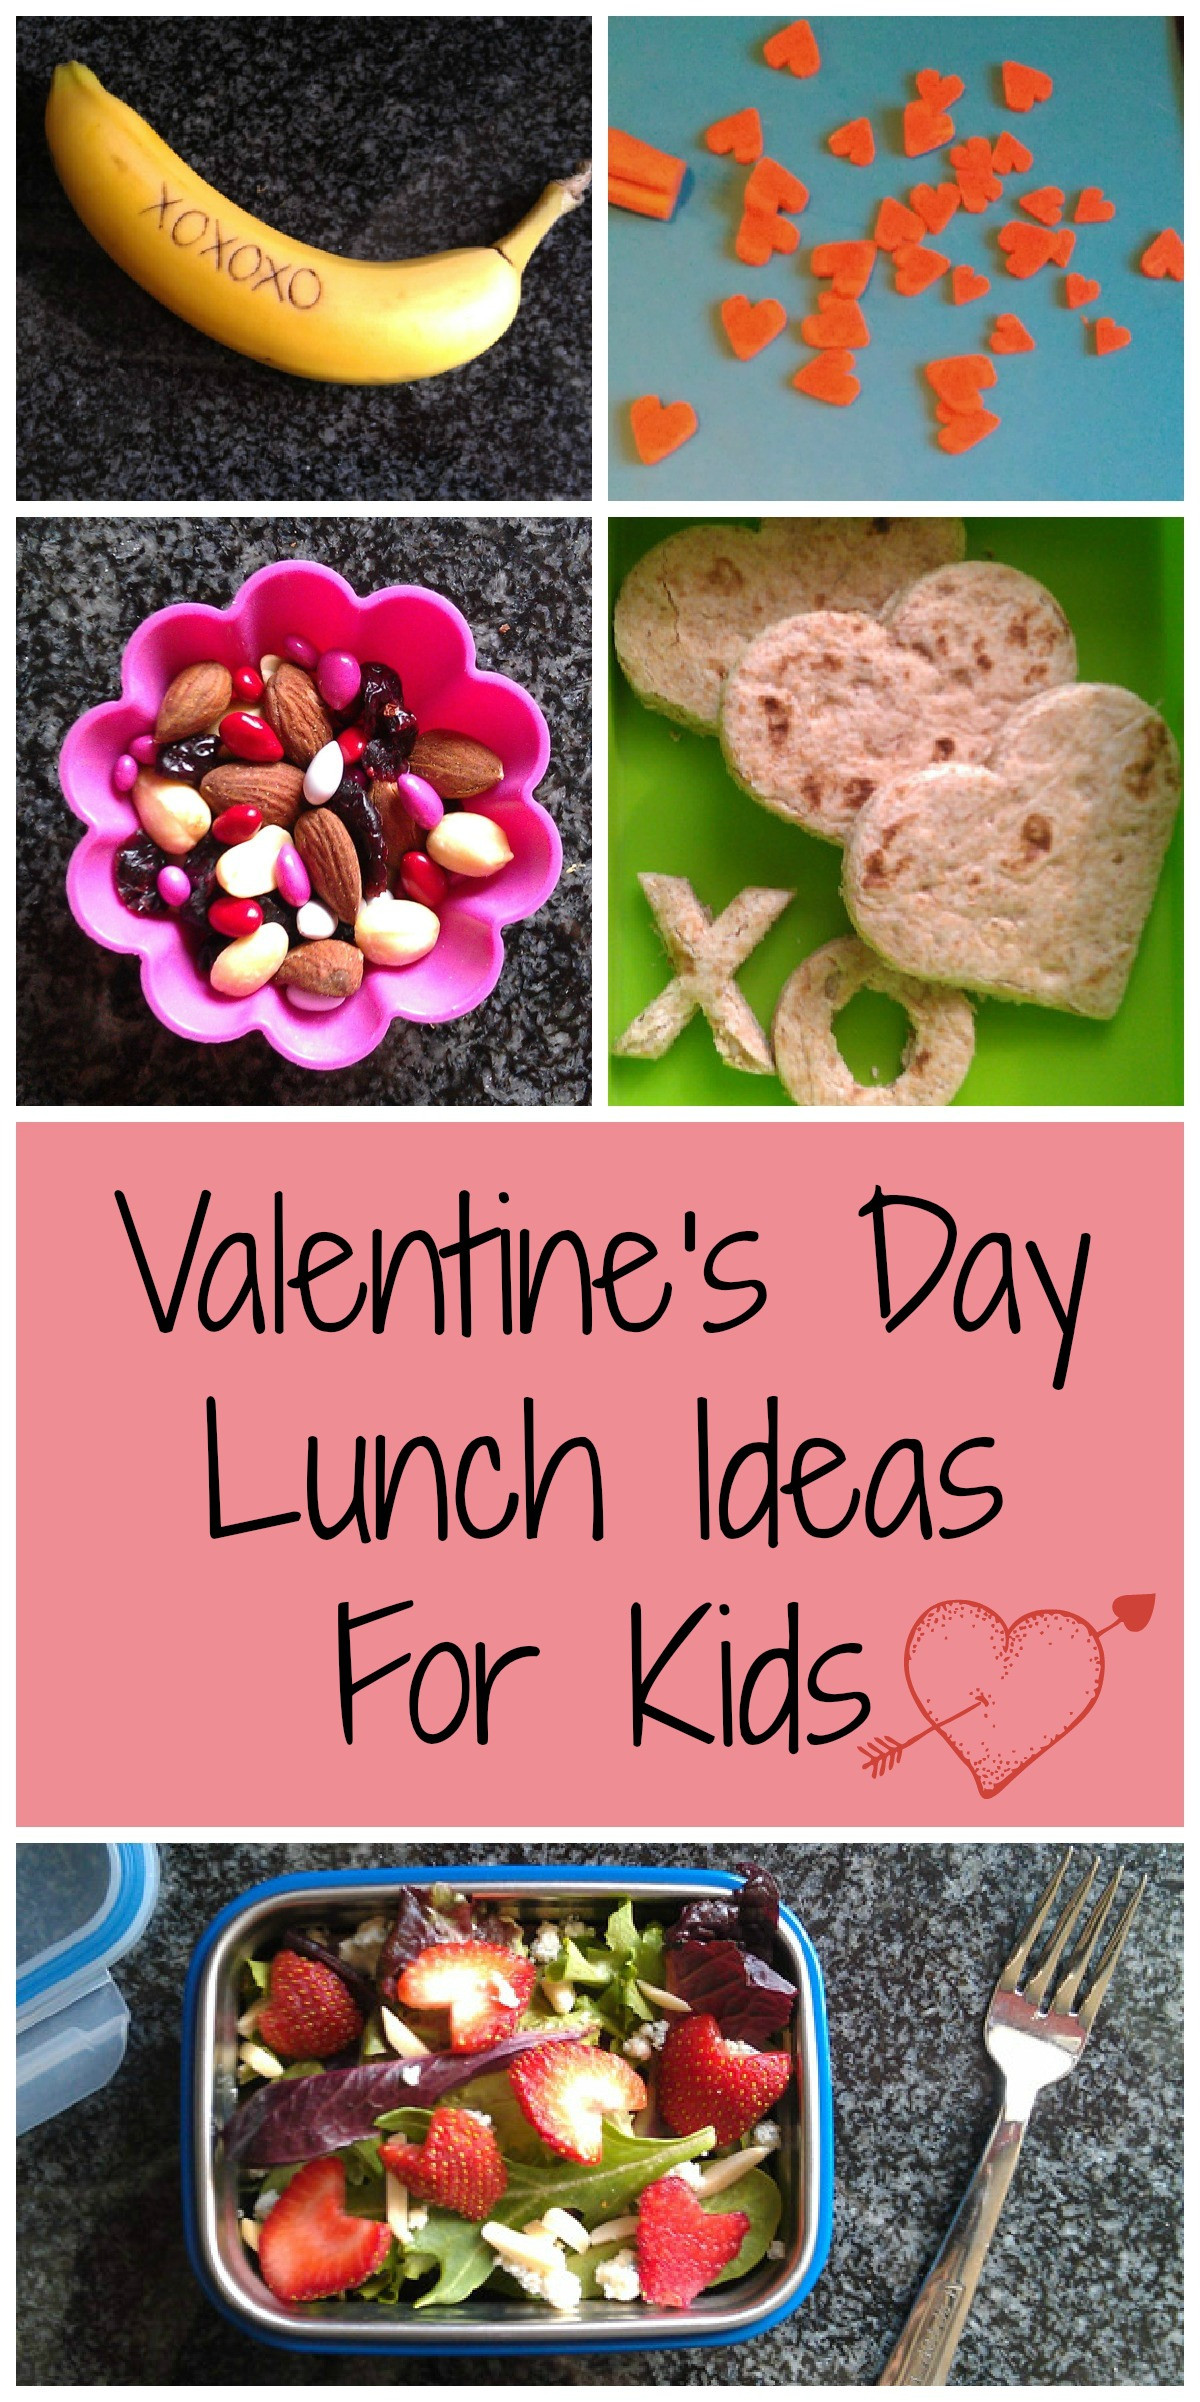 Fun Valentines Day Ideas
 6 Healthy Valentine s Day Lunch Ideas